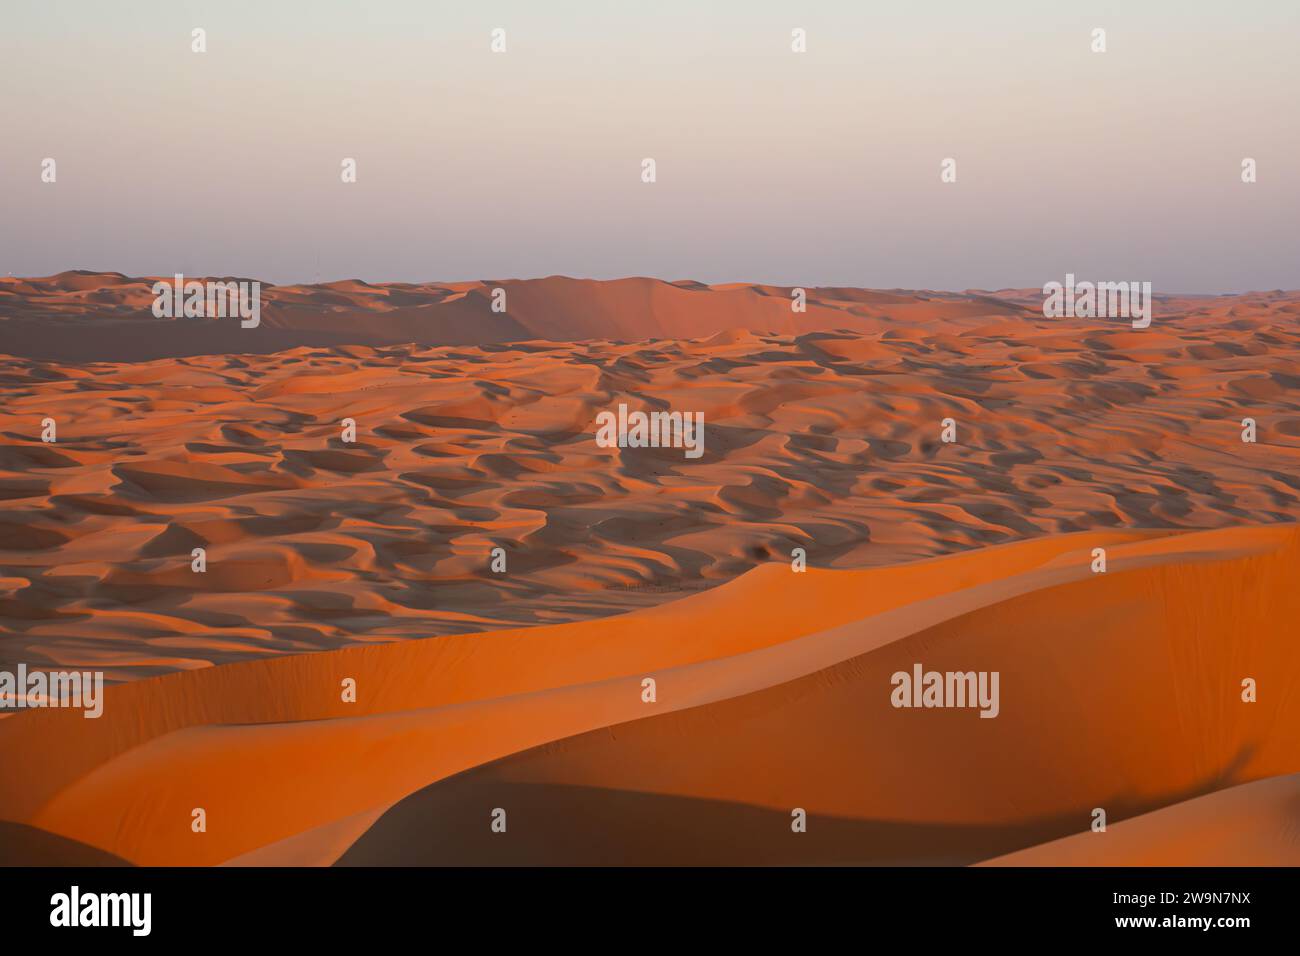 Panorama des dunes de sable de couleur orange et rouge du désert arabe Banque D'Images